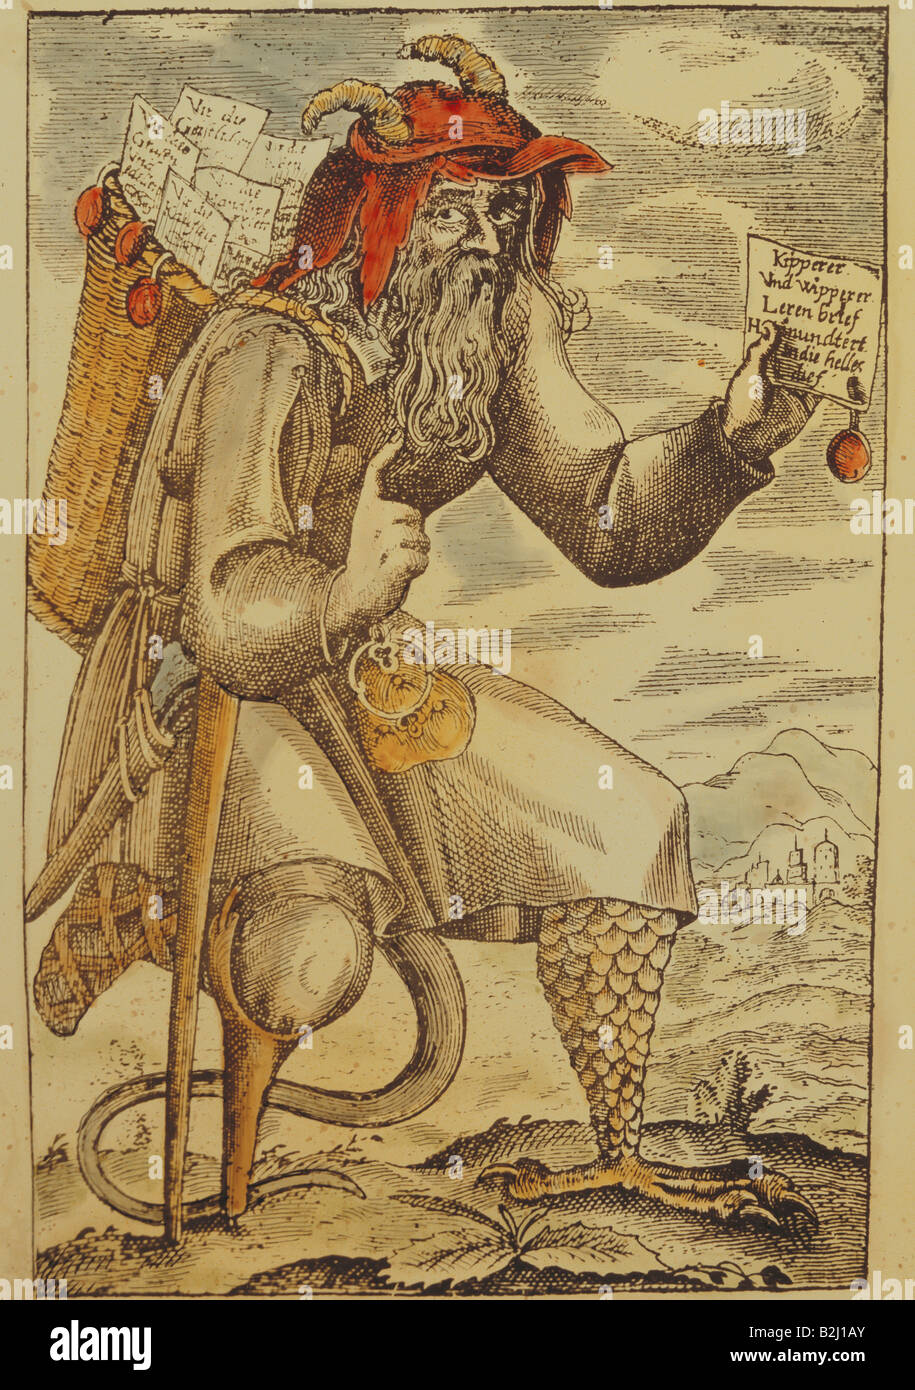 Geld/Finanzen, Fälschung, "Kipperer und Wipperer" (Kipper und see-saw Zeit), Kupferstich, farbig, Deutschland, ca. 1620, Artist's Urheberrecht nicht gelöscht werden Stockfoto